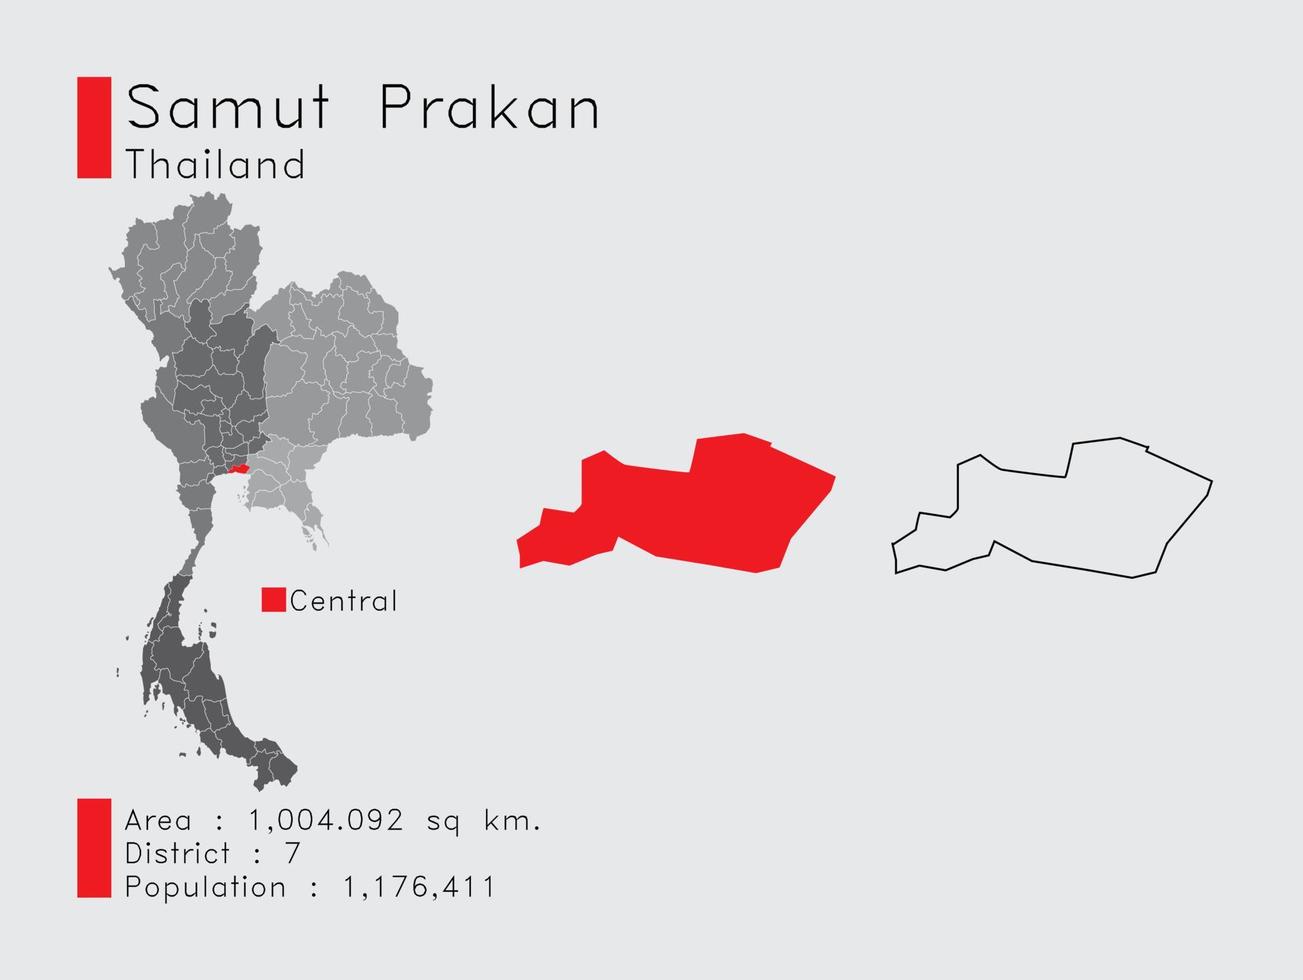 samut prakan position in thailand eine reihe von infografikelementen für die provinz. und Bereich Bezirk Bevölkerung und Gliederung. Vektor mit grauem Hintergrund.